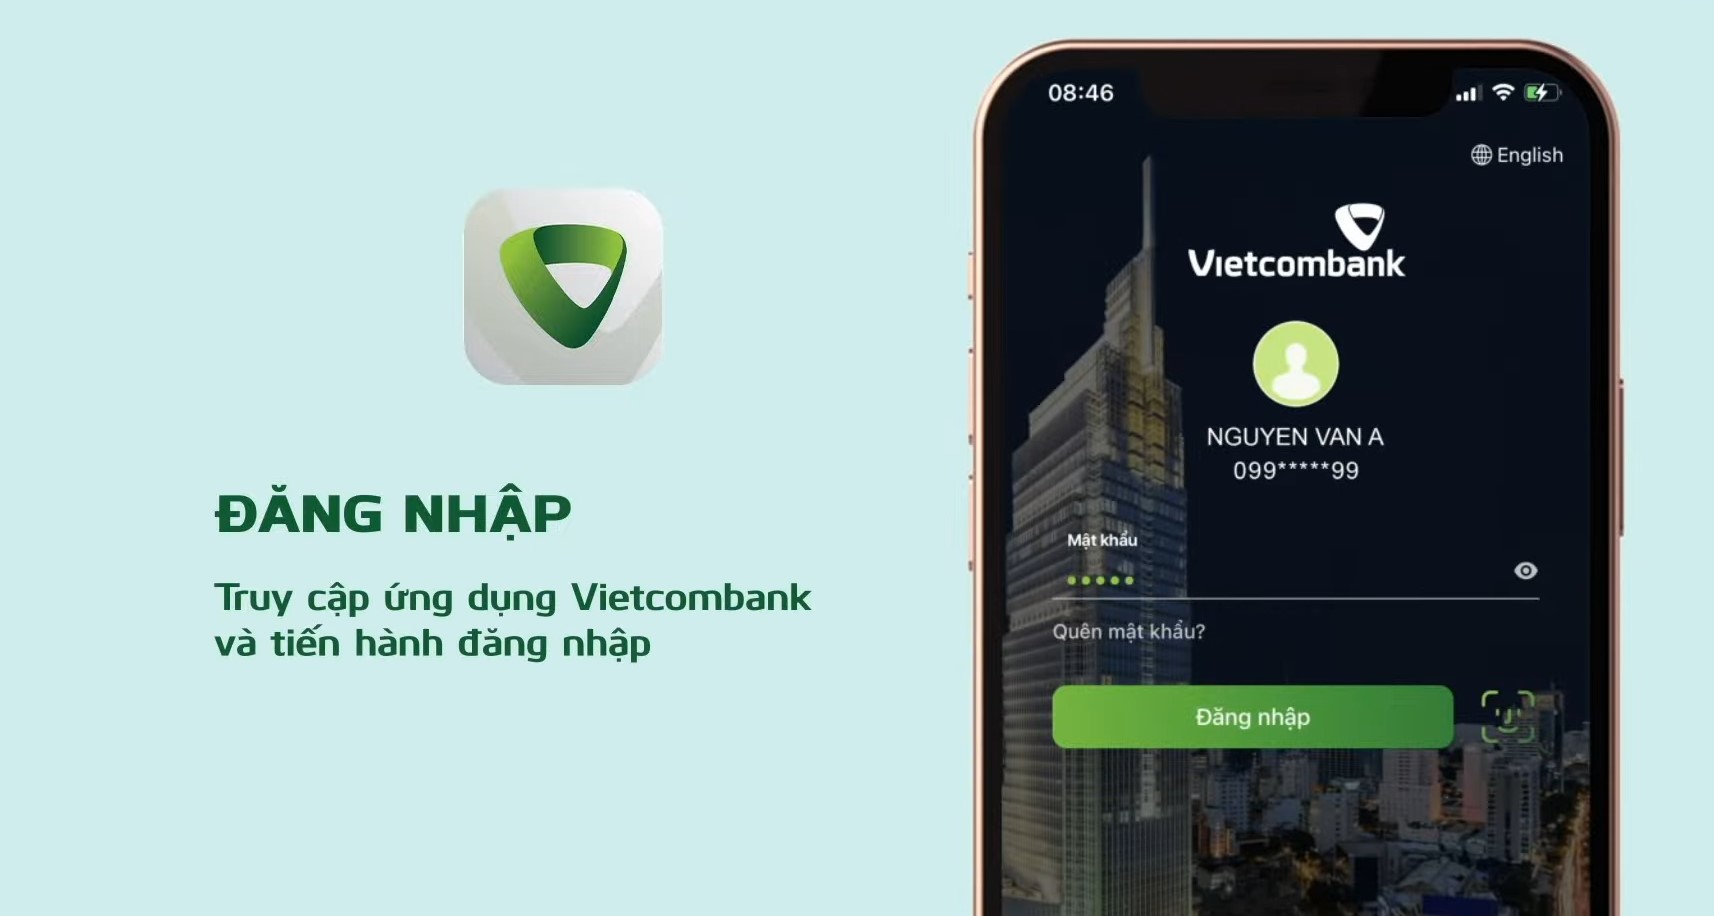 1-cách khóa thẻ vietcombank trên app điện thoại (1)